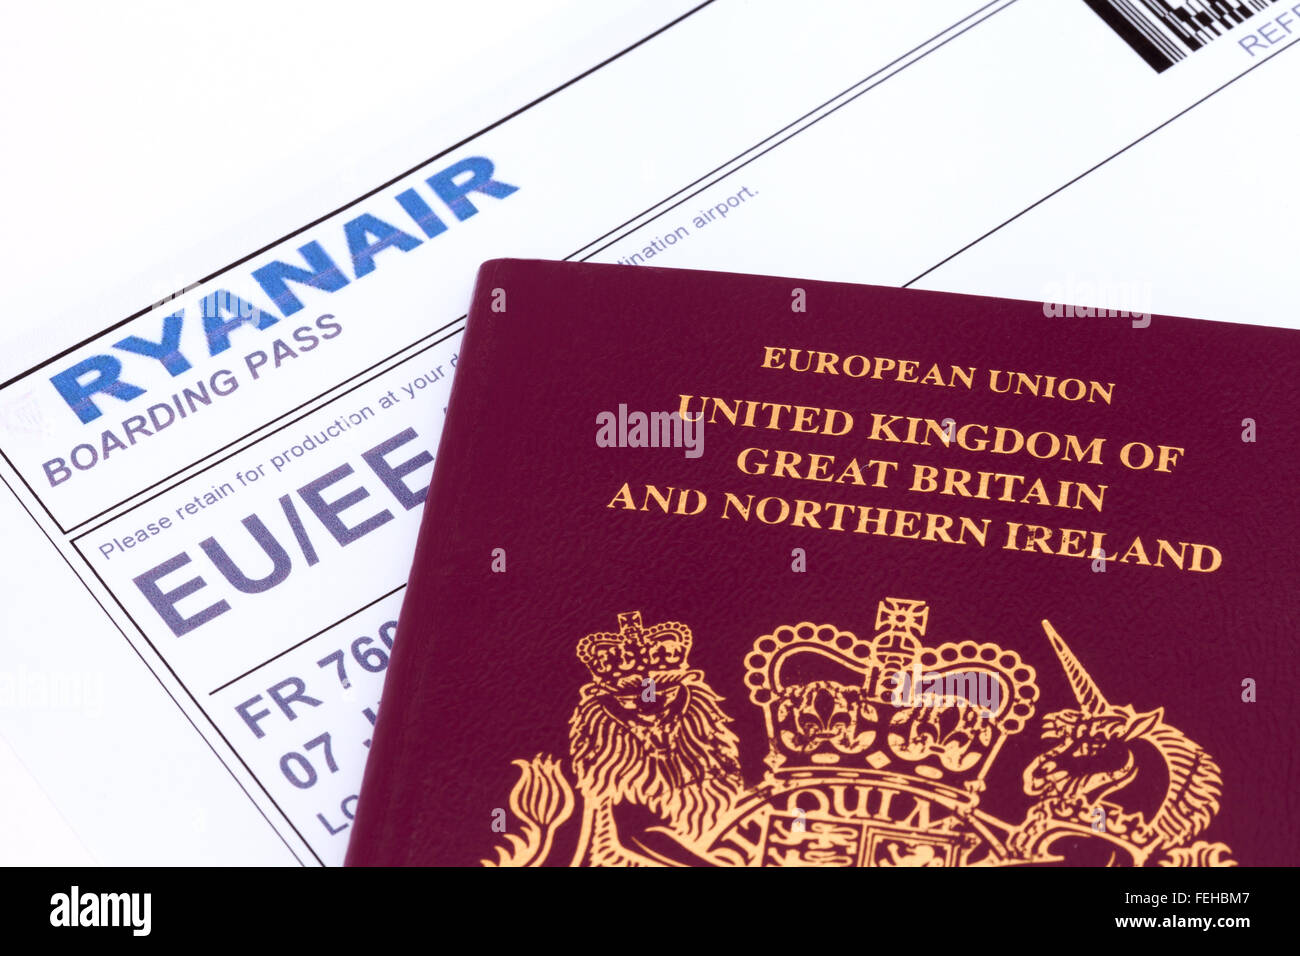 Britischen Reisepass und Ryanair Boarding pass - Konzept - Reisen, Reisen, fliegen Stockfoto